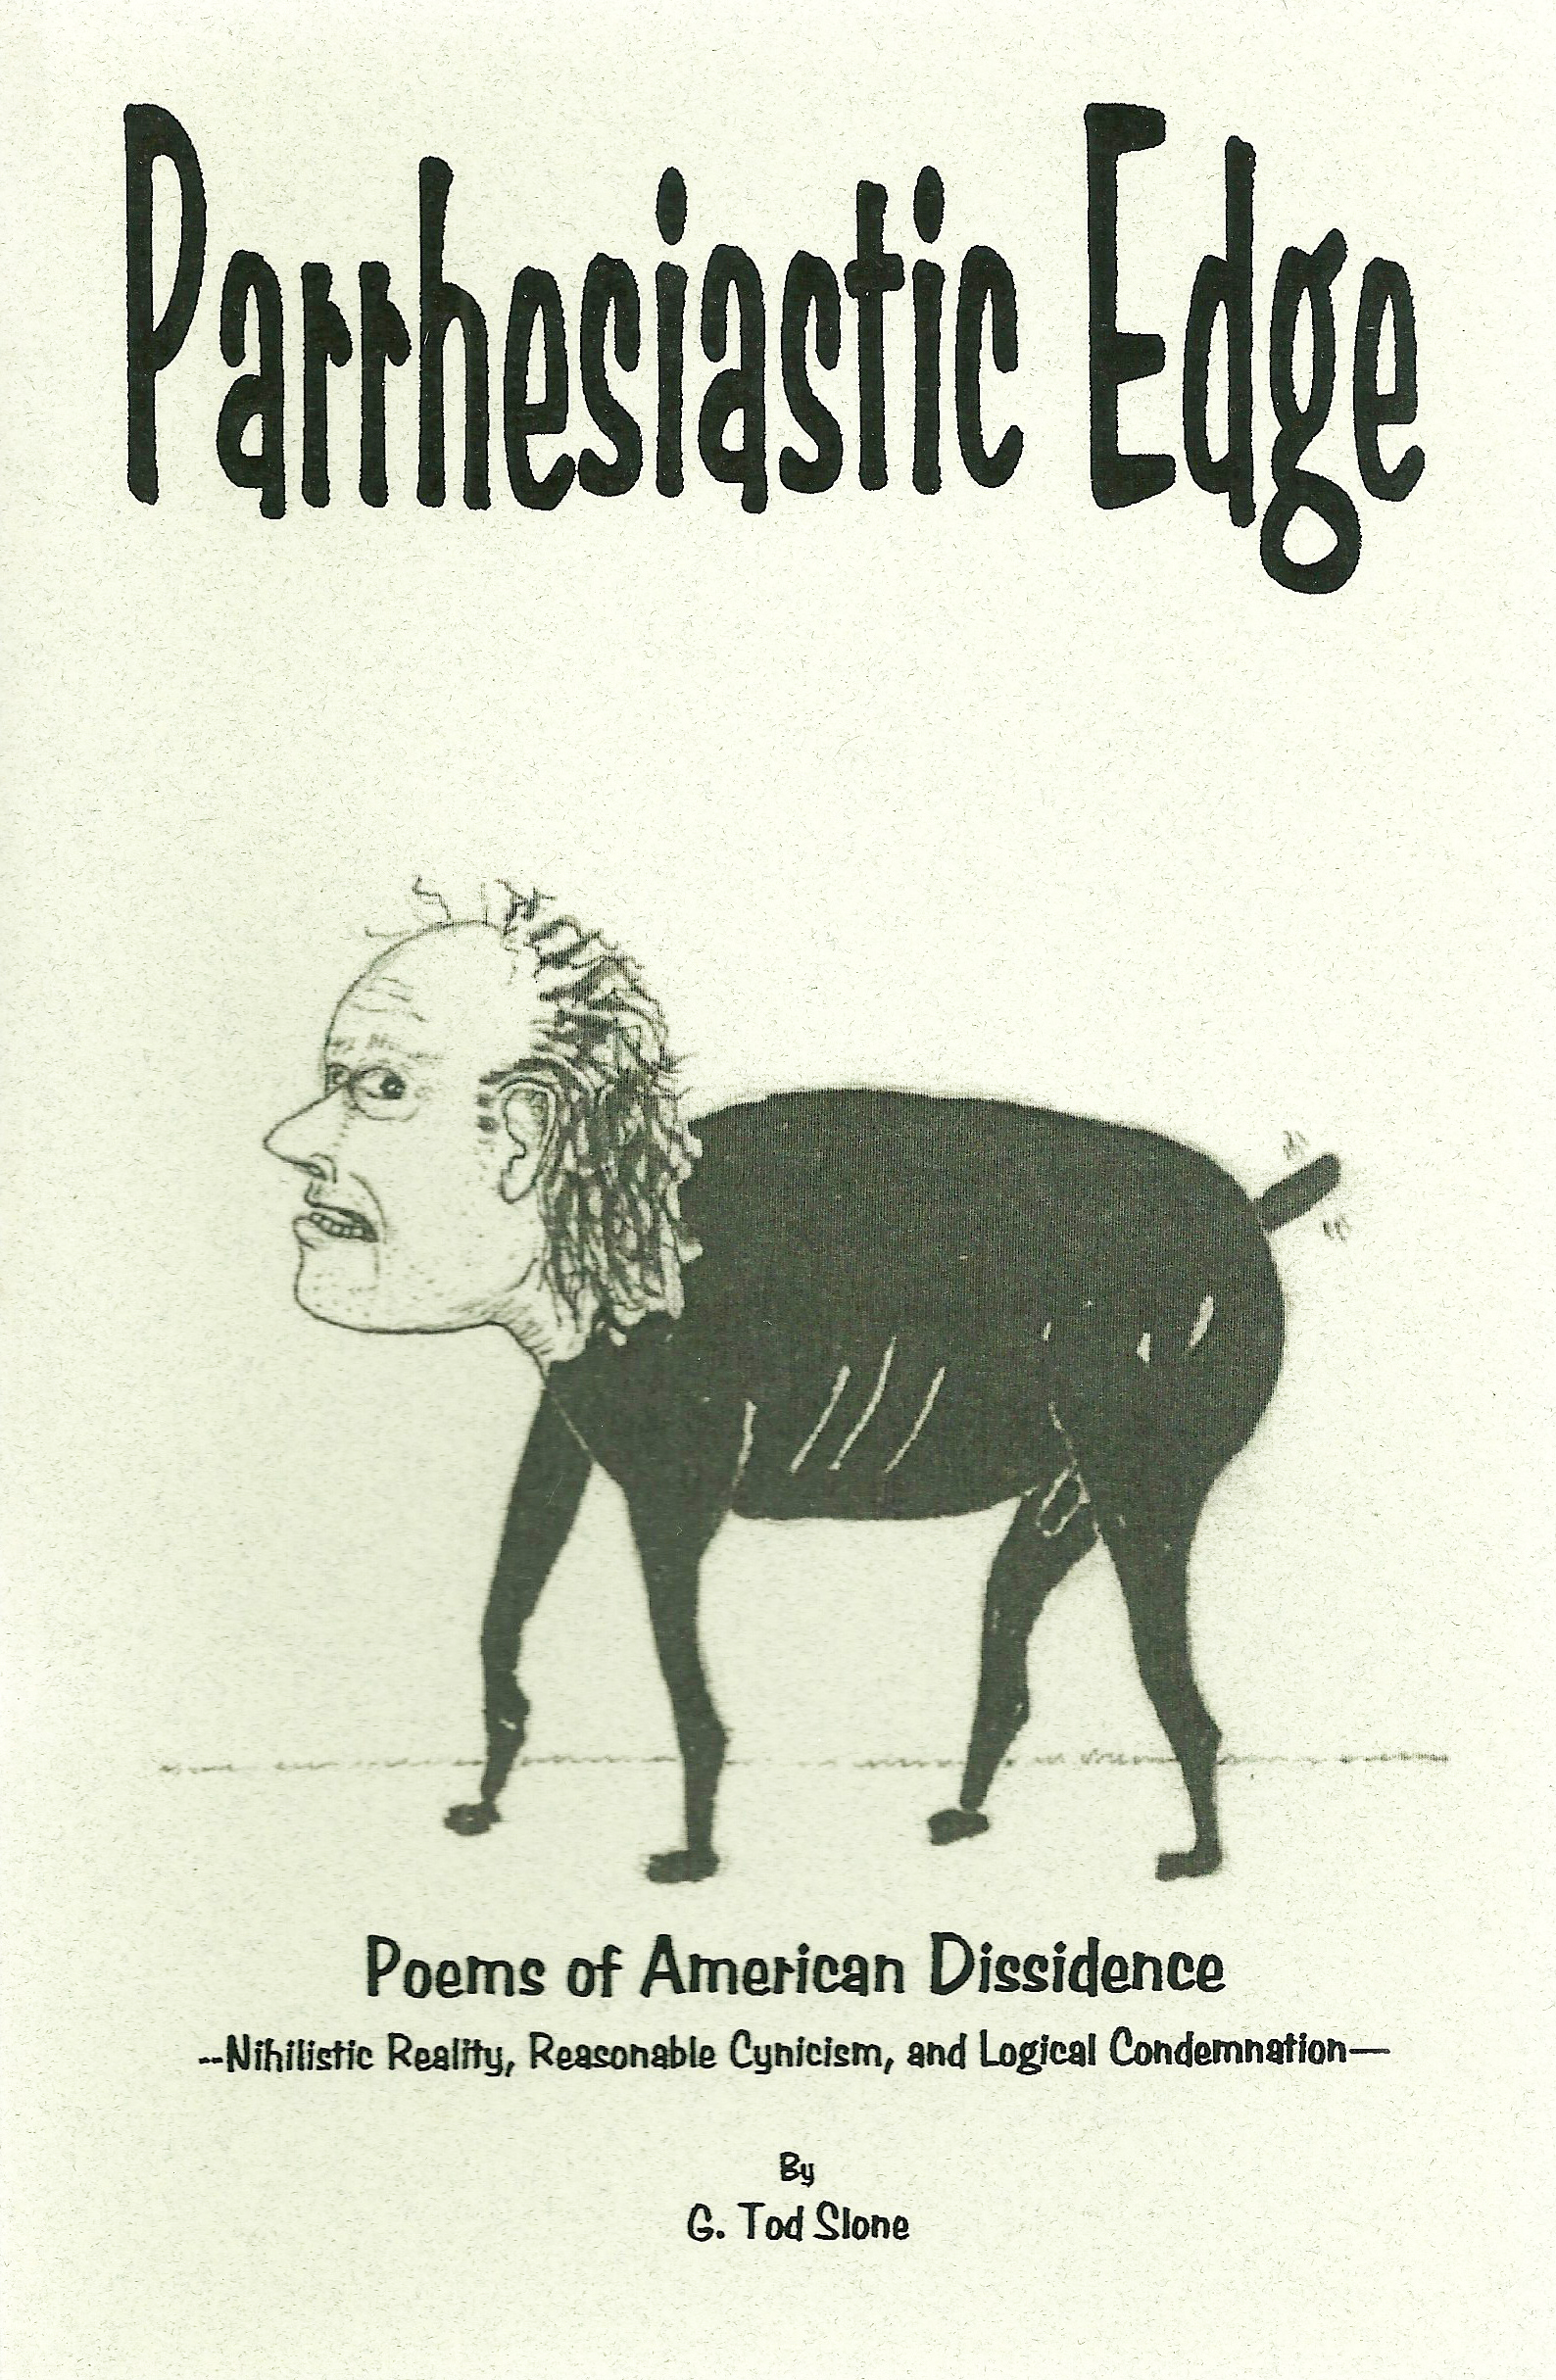 Parrhesiastic Edge